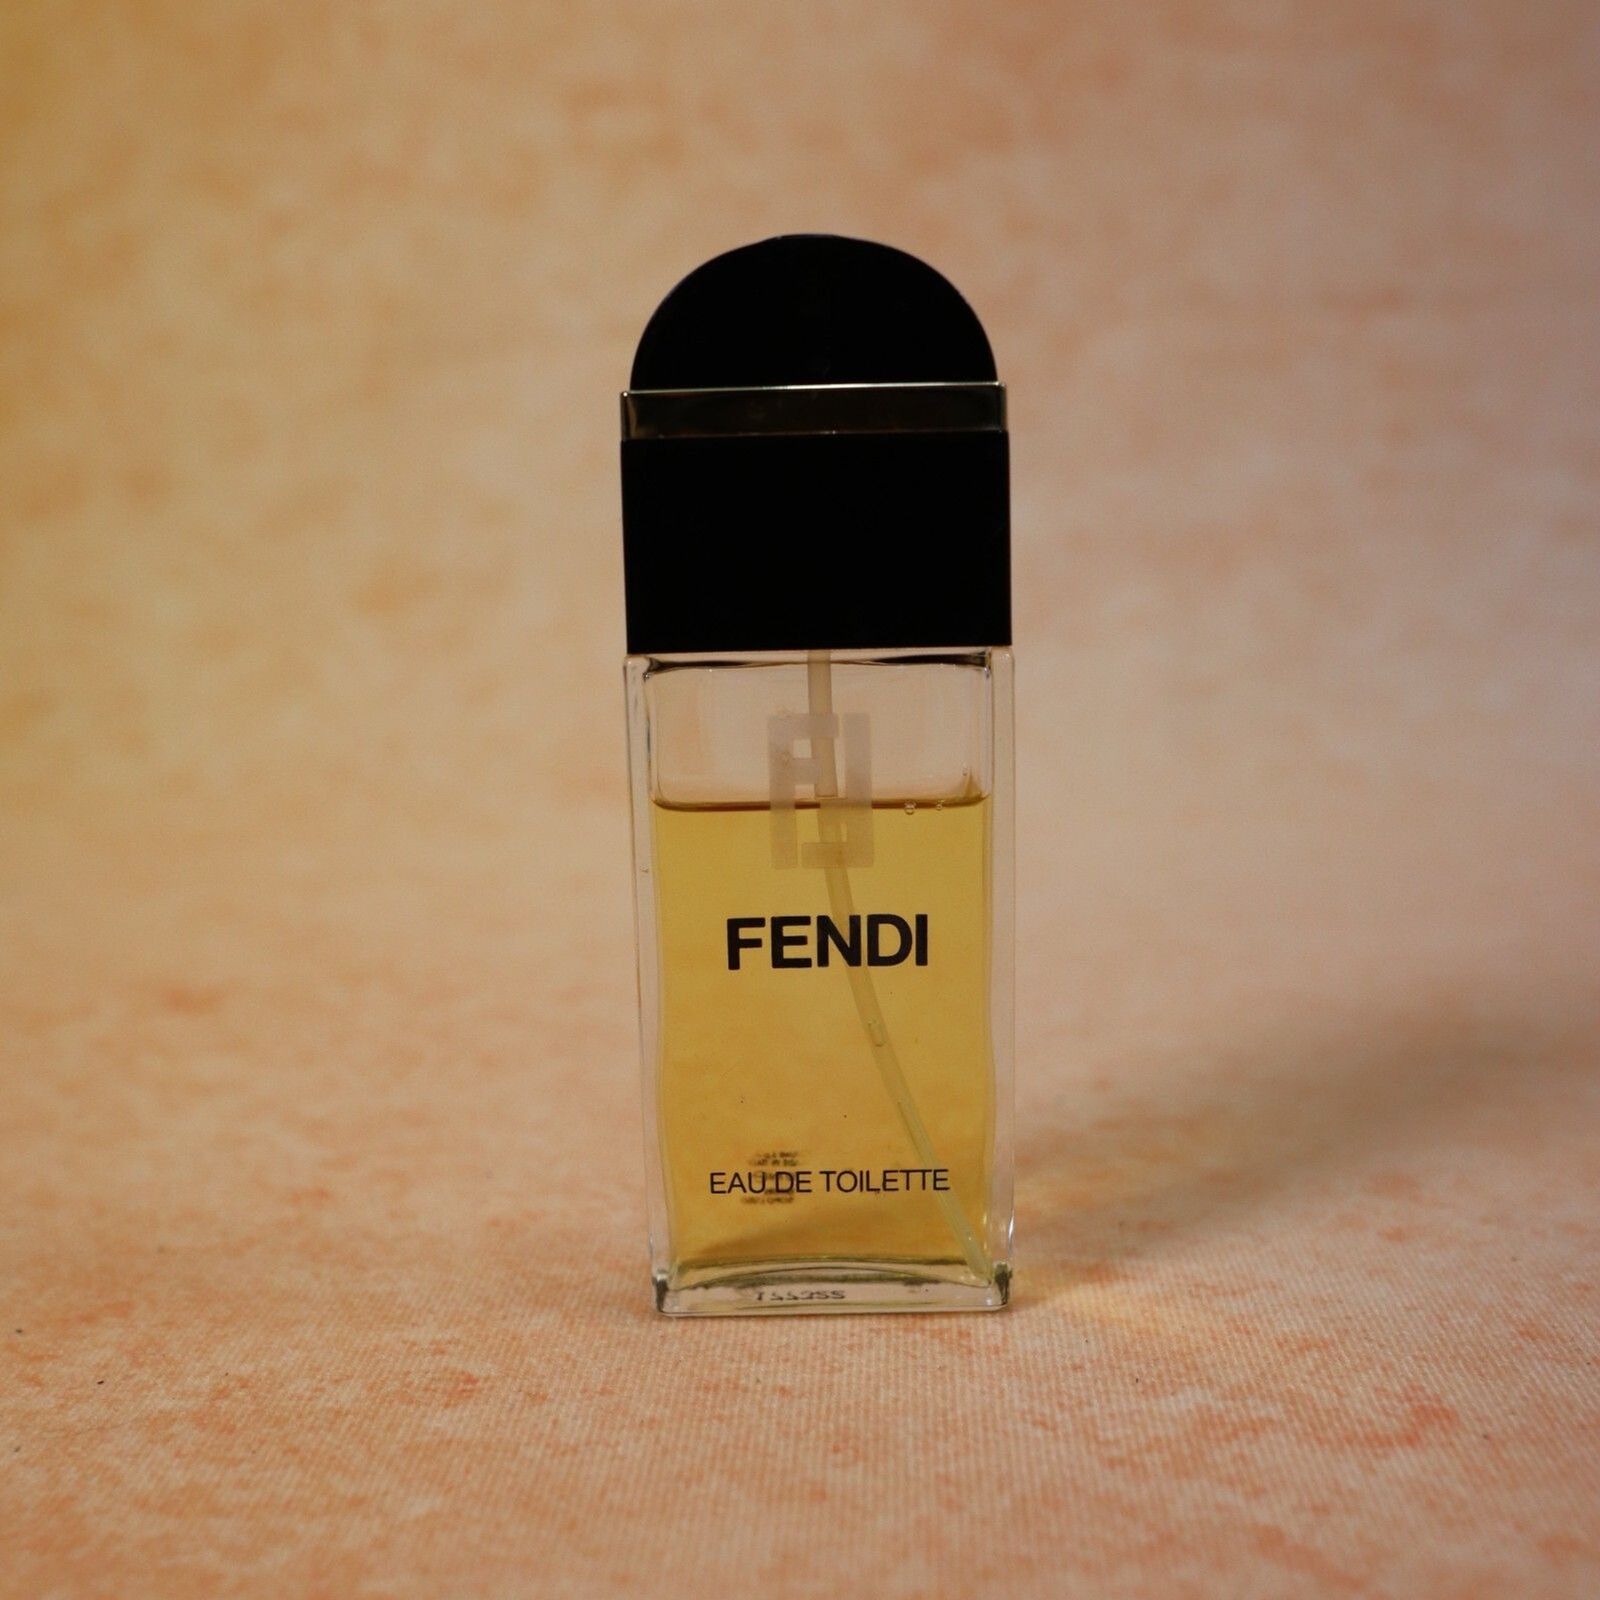 FENDI USED Toilette Perfume 1.7 oz 50 ml 3/4 full RARE Vintage 